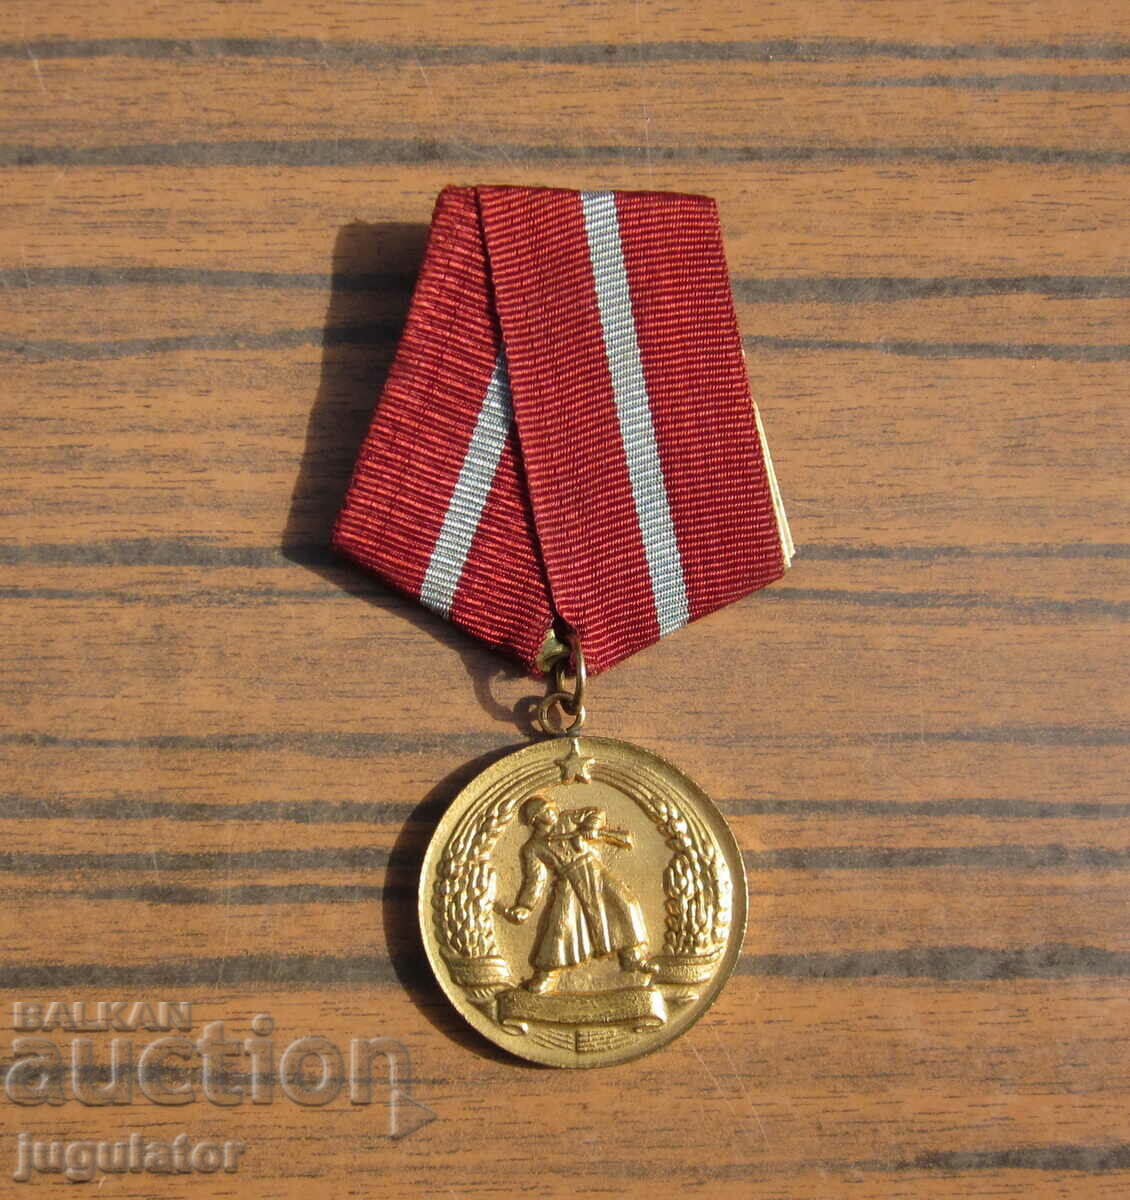 perfectă medalie militară bulgară pentru meritul de luptă